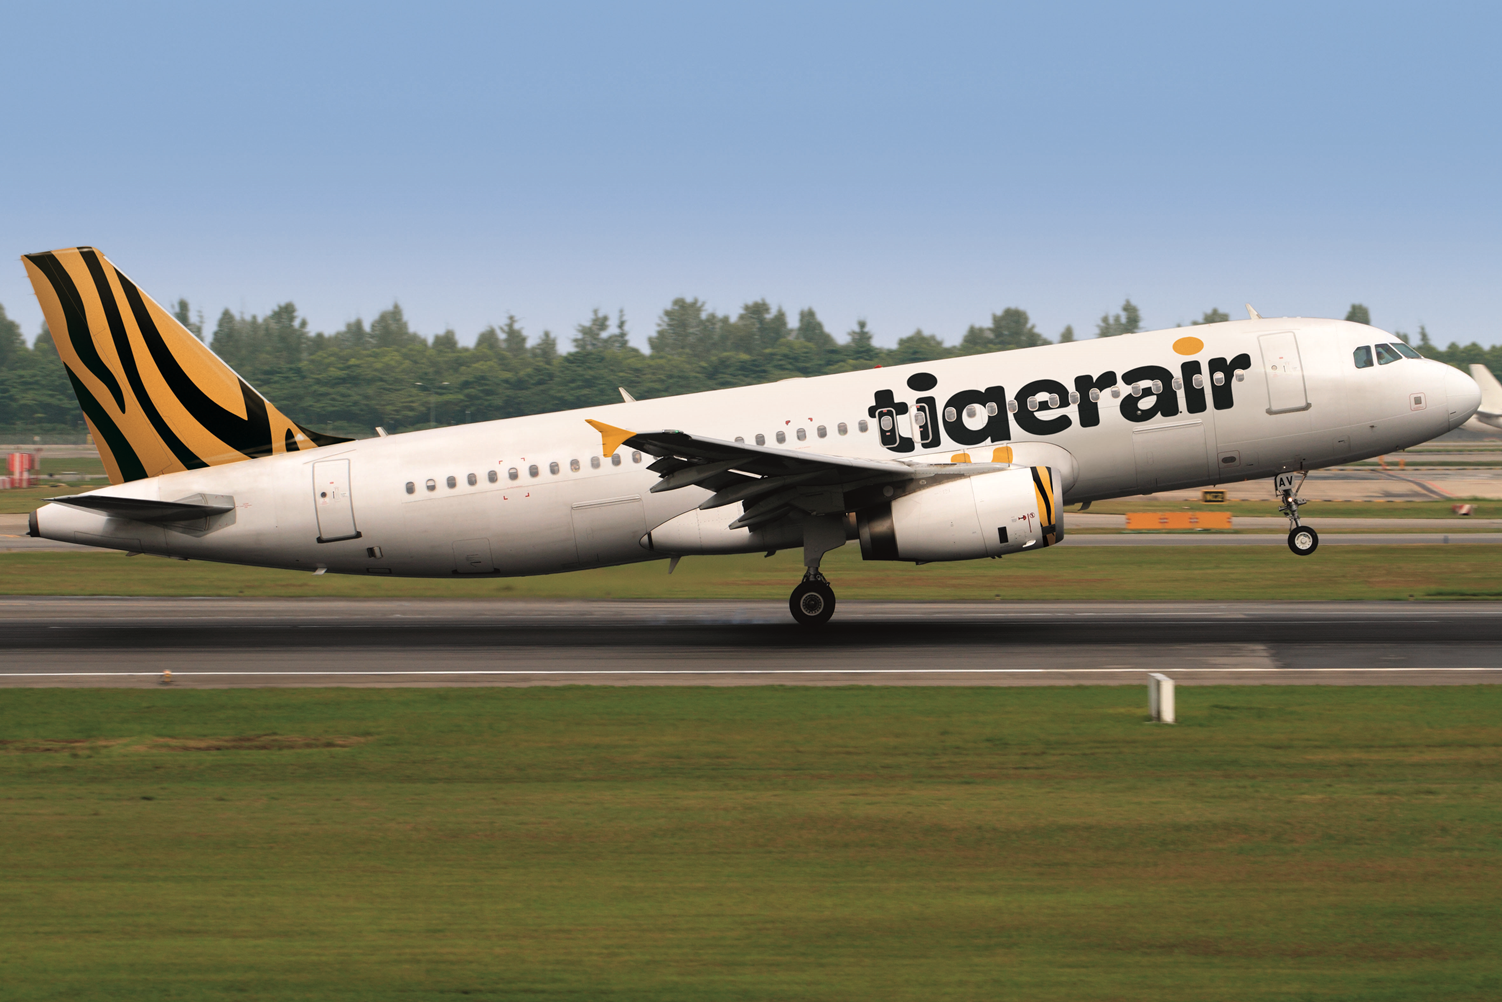 Tigerair Takeoff